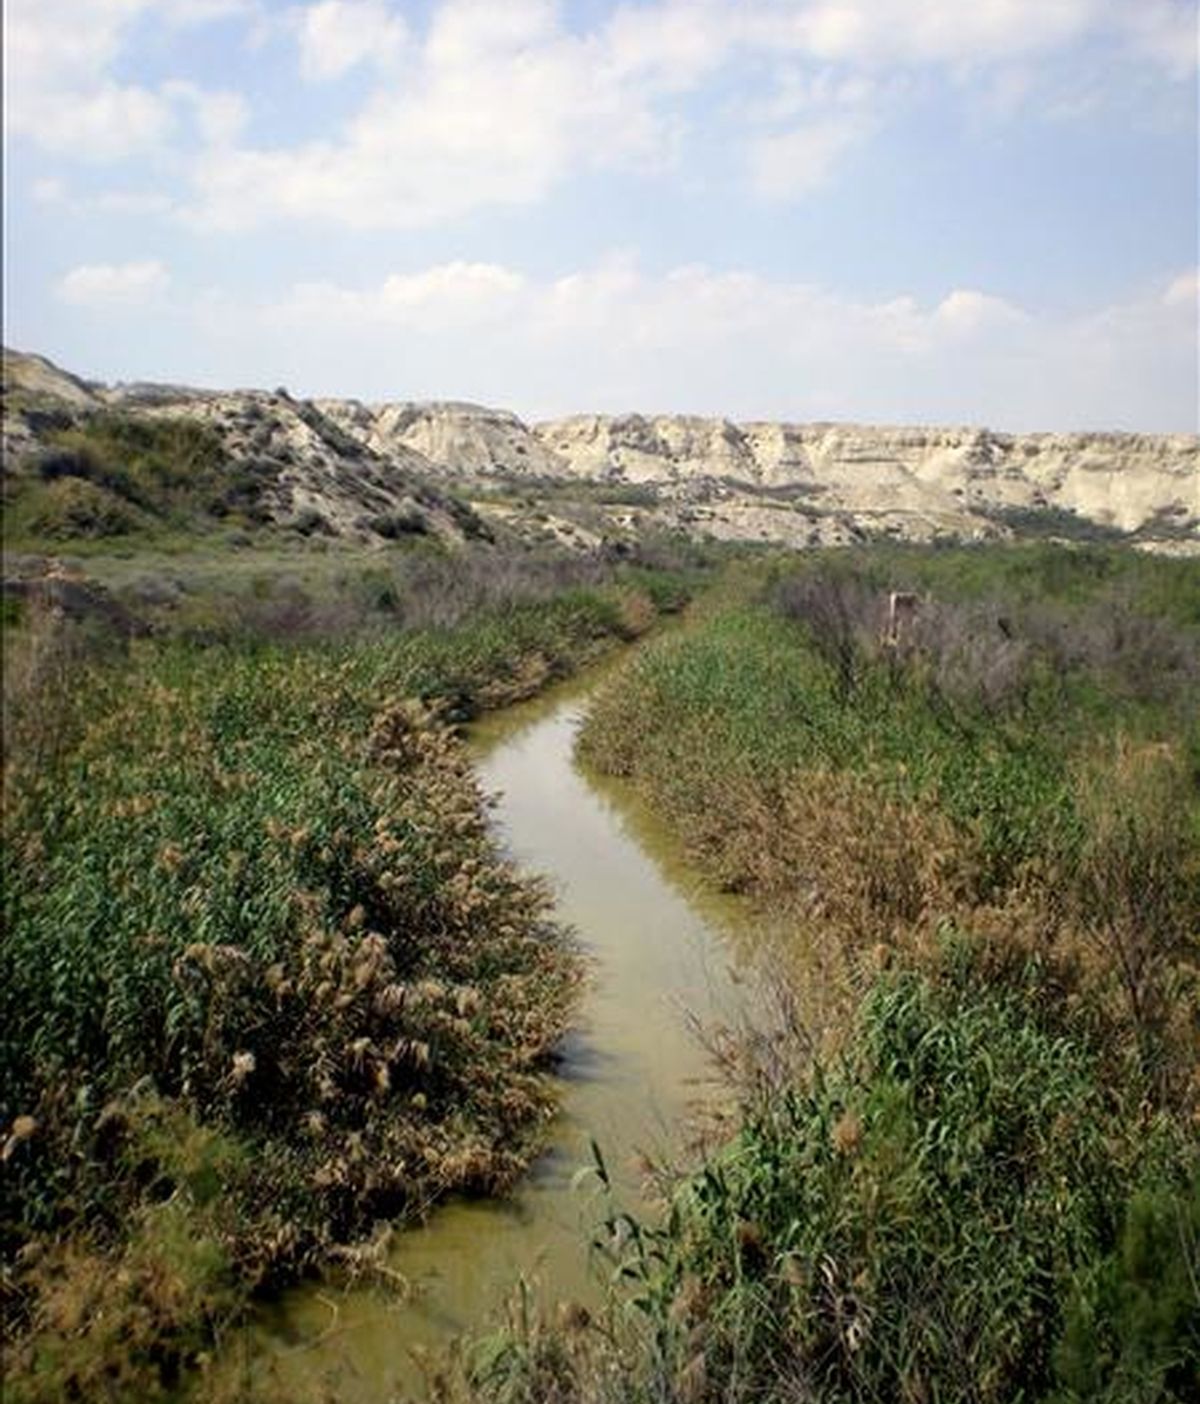 Bautizarse en el escaso y embarrado caudal del río Jordán es un riesgo para la salud que podría prohibirse hasta que se reduzcan los niveles de contaminación, que superan en cuatro veces los permitidos, según denuncian ecologistas. EFE